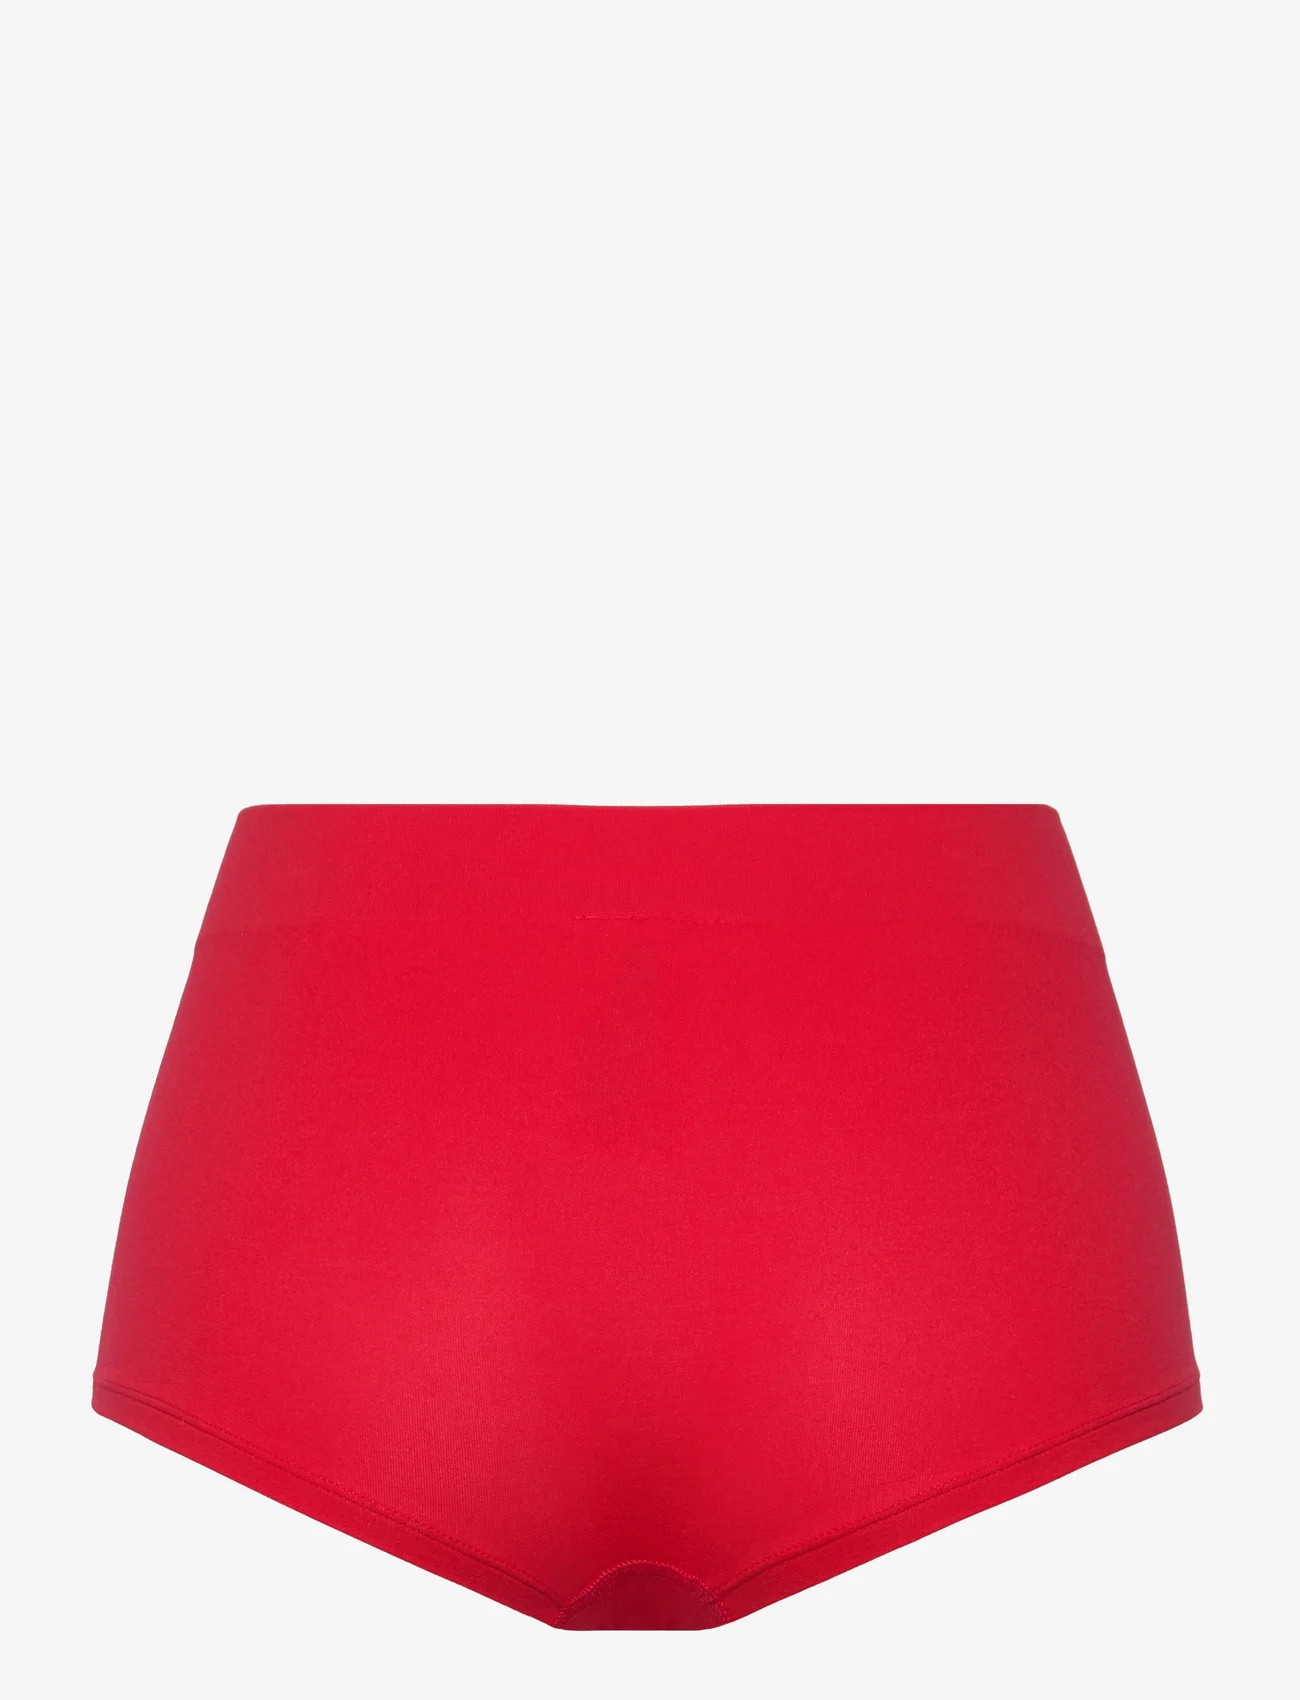 adidas Originals Underwear - Short - laveste priser - red - 1